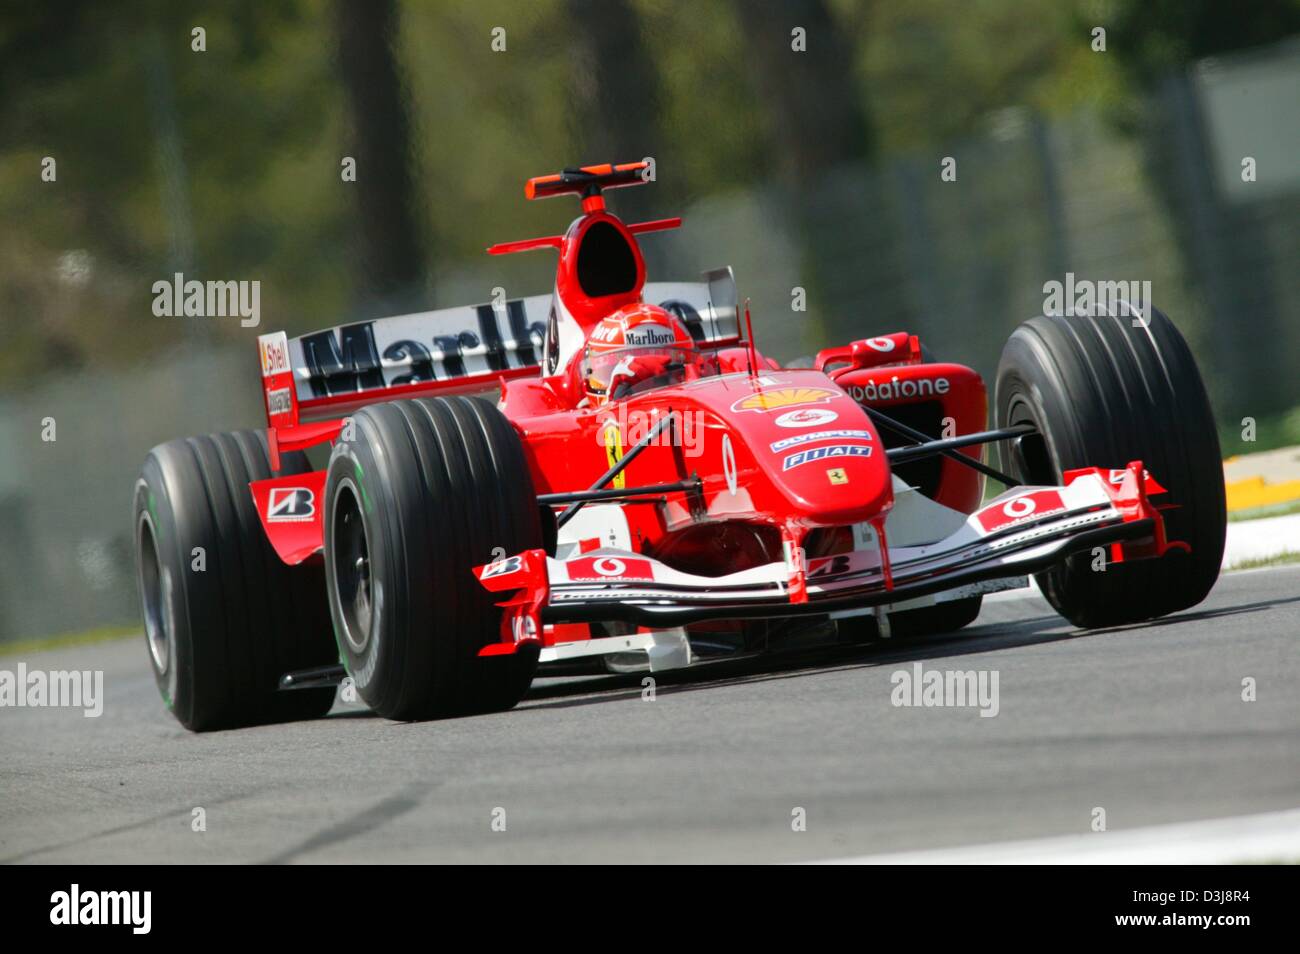 (Dpa) - Un piloto de Fórmula Uno alemán Michael Schumacher carreras durante el 2004 Gran Premio de San Marino en Imola, Italia, 25 de abril de 2004. Equipo de Schumacher (Ferrari) ganó la carrera. Foto de stock